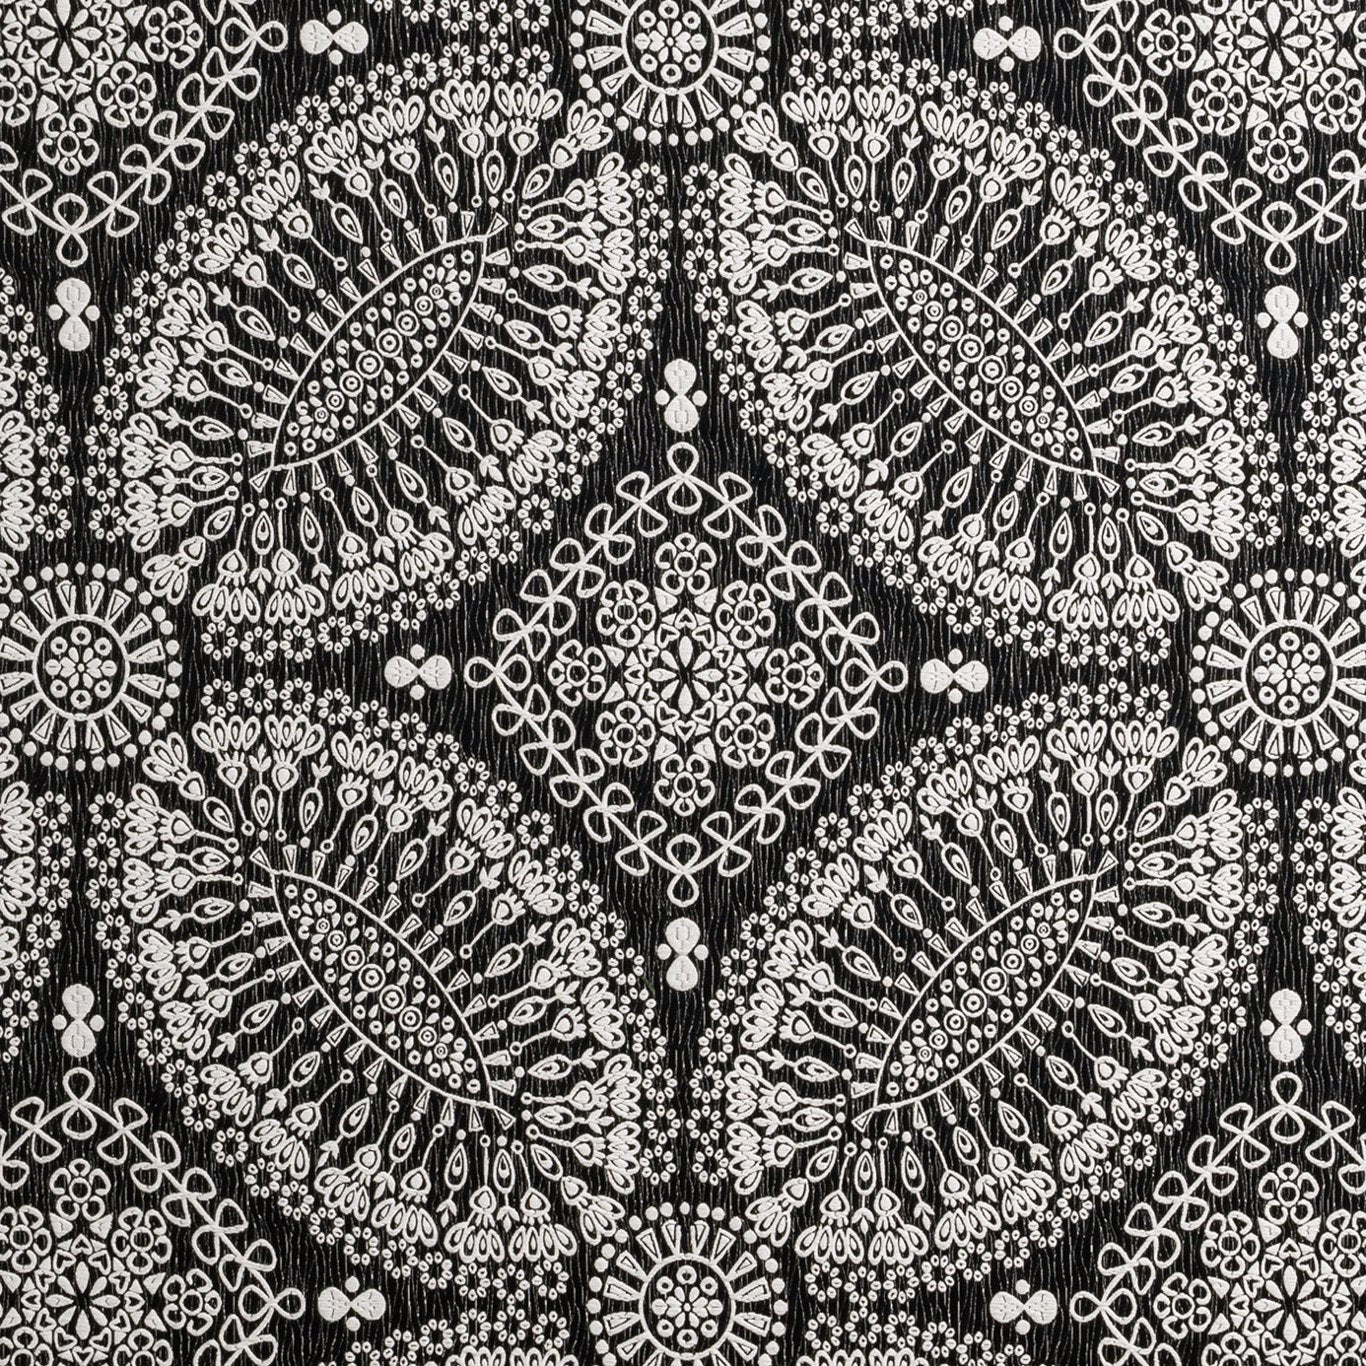 Bw1007 Fabric by Clarke & Clarke - F0879/01 - Black/White